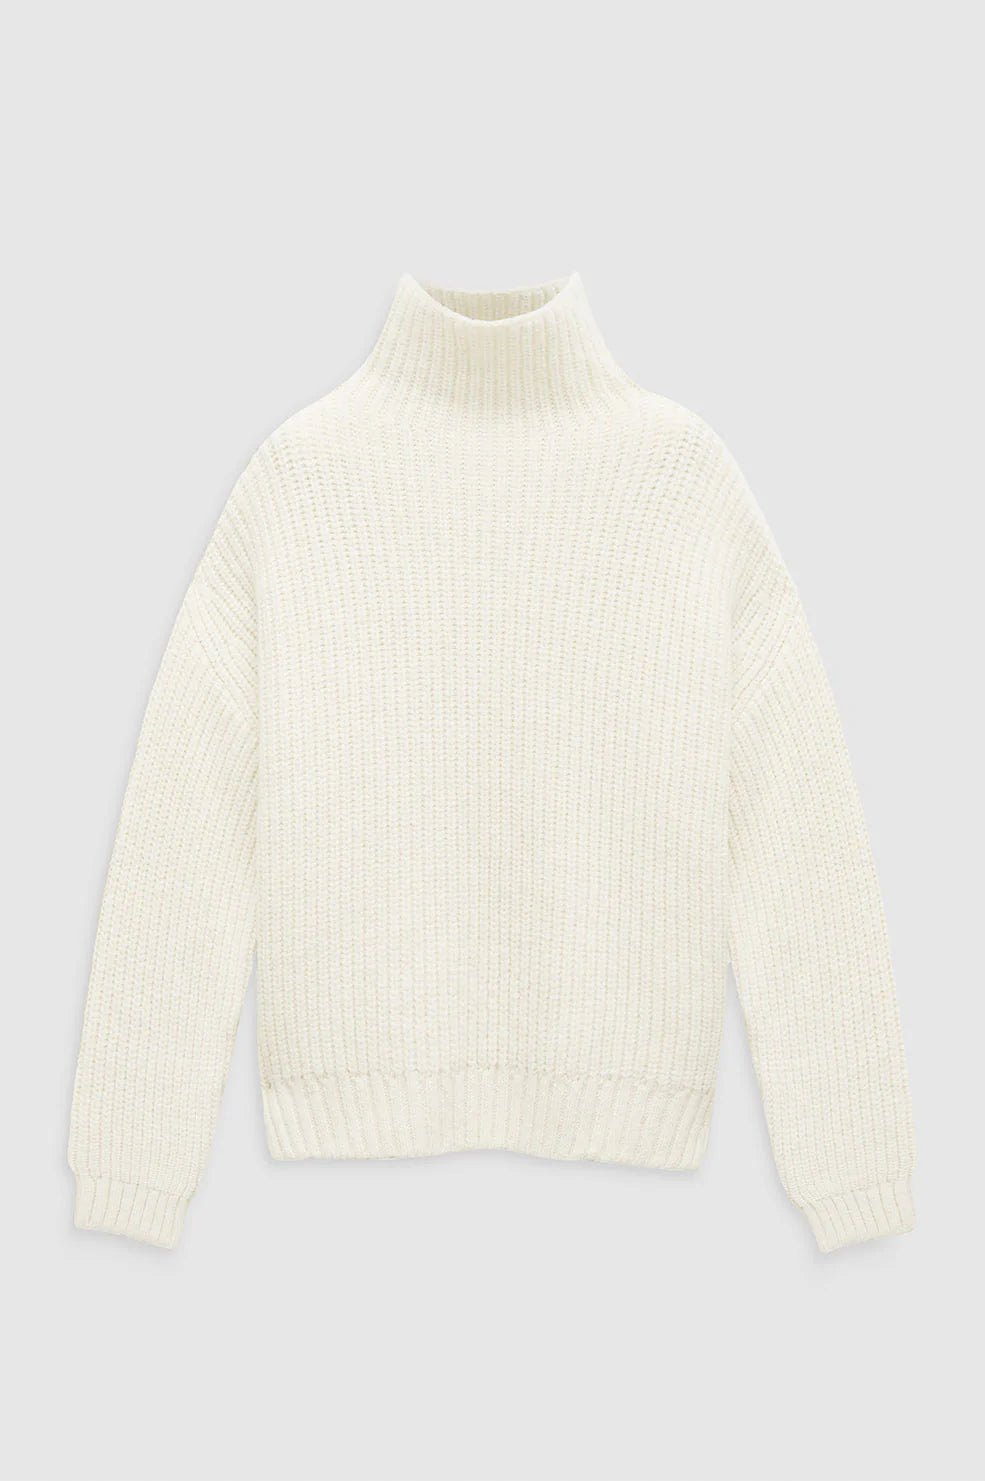 Sydney Sweater in Cream